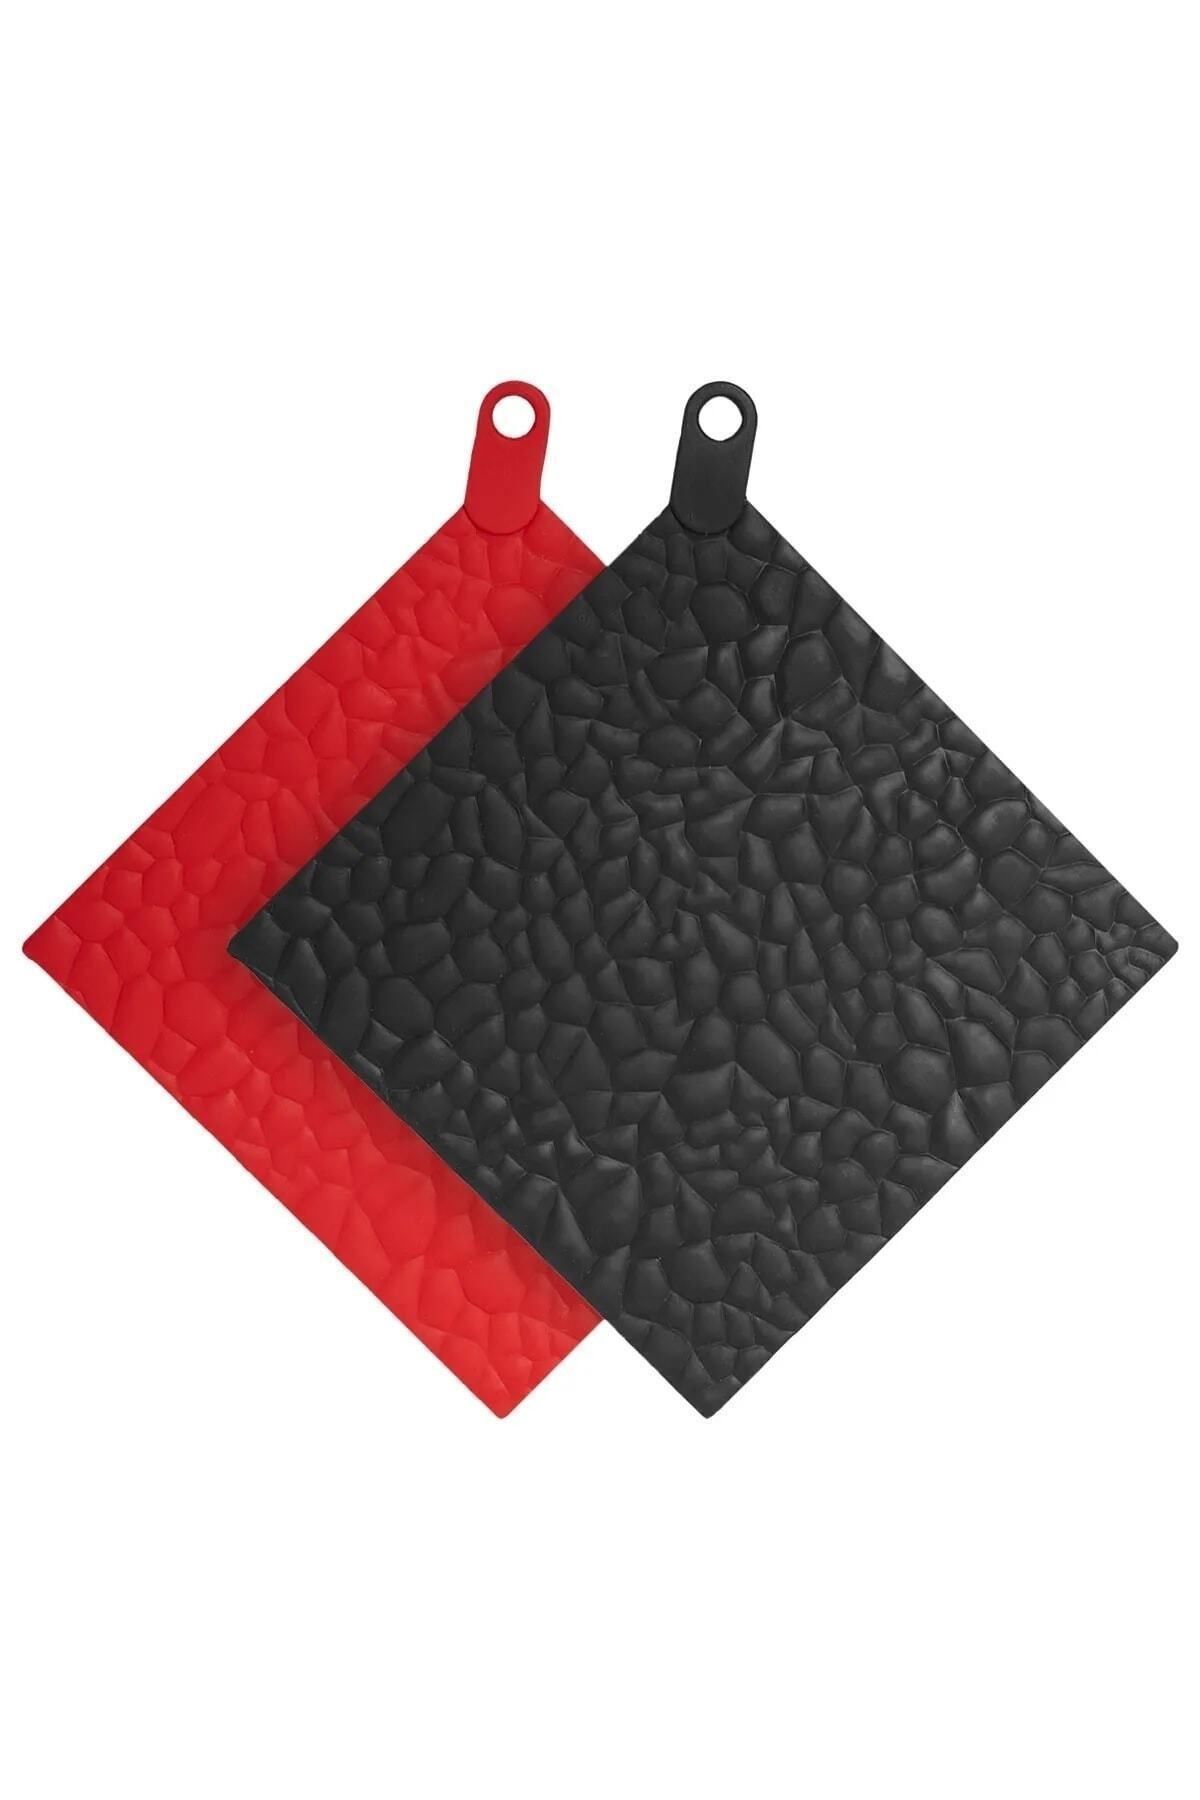 ZUZU MADE Silikon Nihale Ve Fırın Tutacağı 2'li Set Kırmızı Siyah 16 X 16 Cm